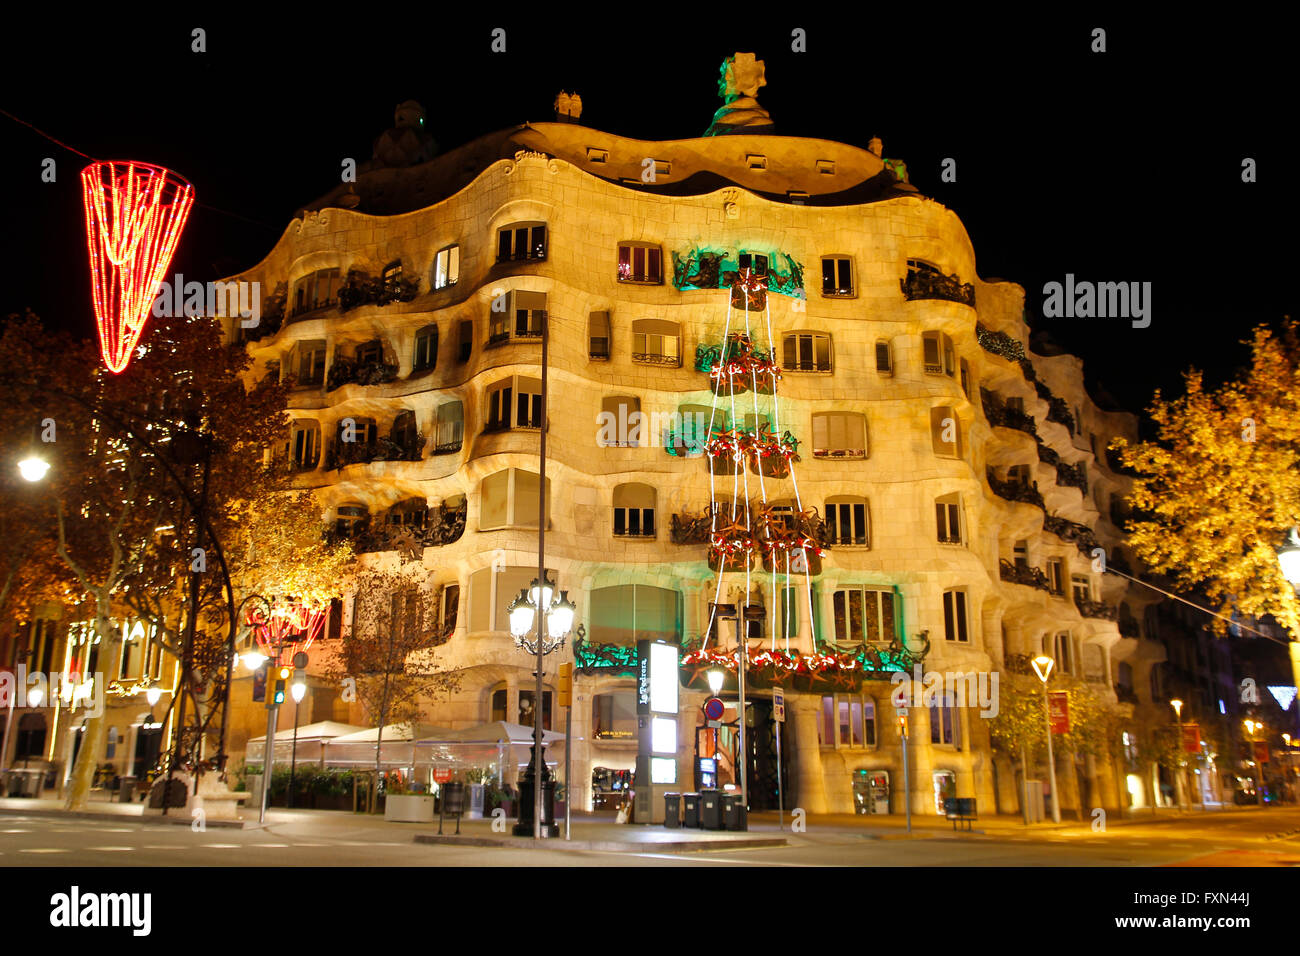 Casa Mila, La Pedrera from the catalan architect Antoni Gaudi, famous architecture in Barcelona Stock Photo